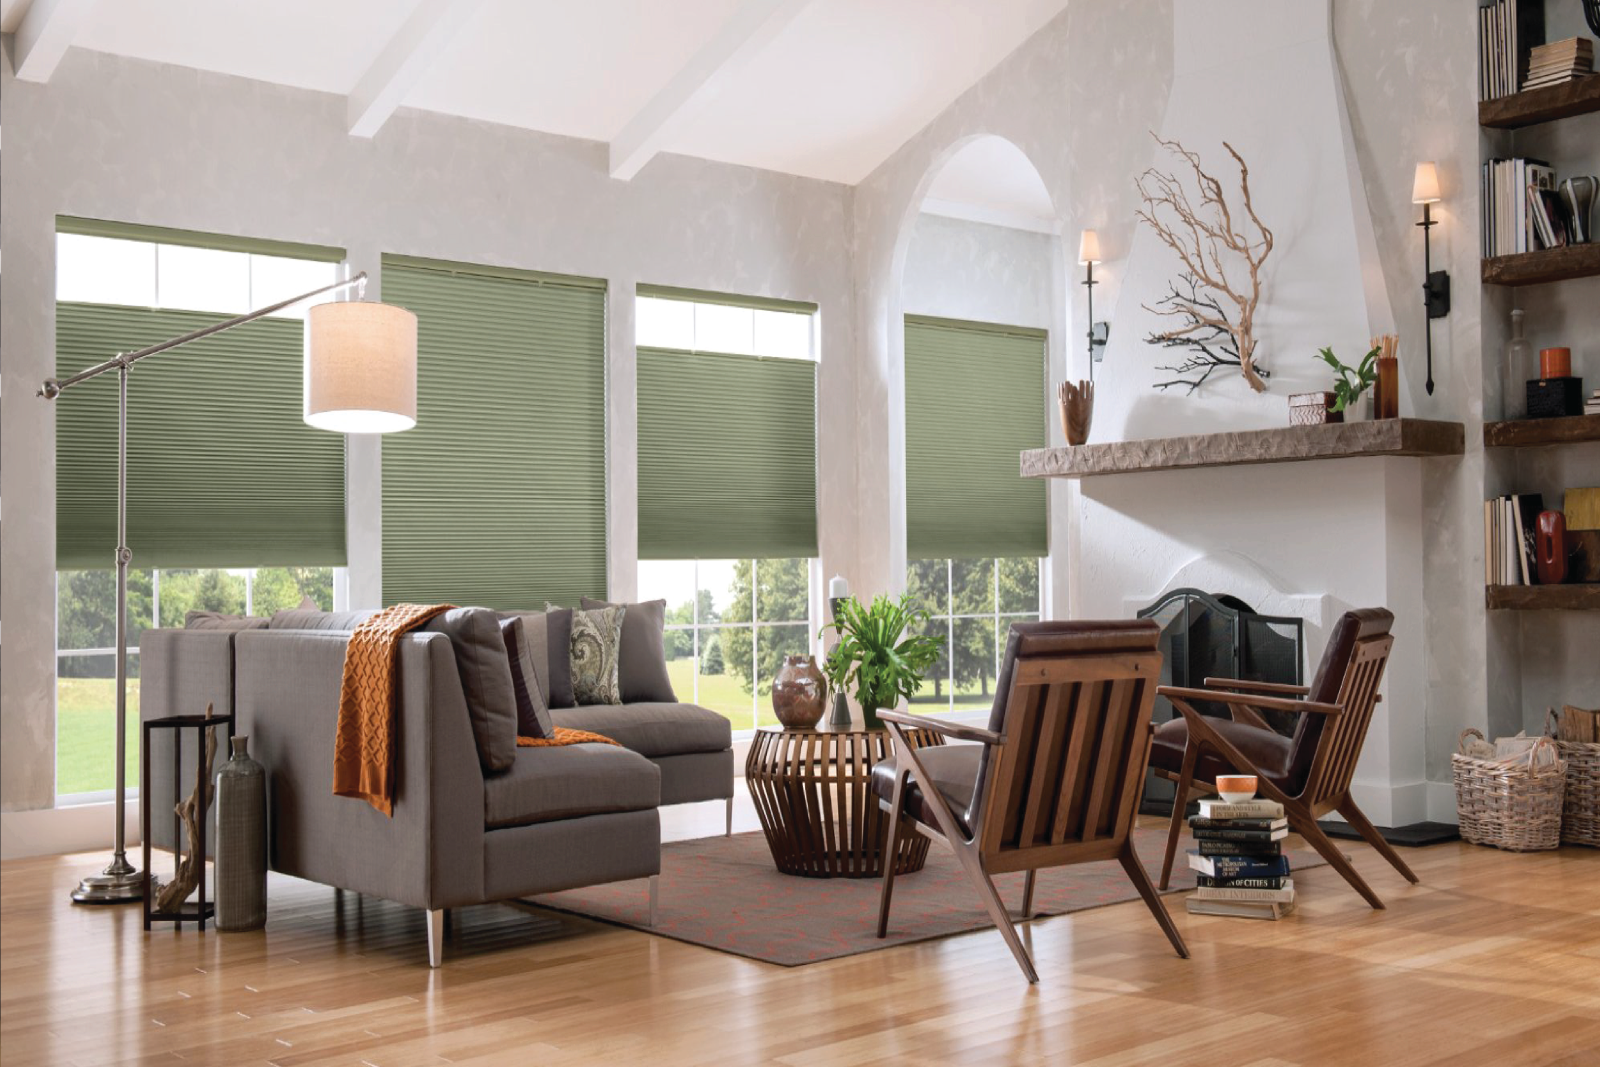 Rèm tổ ong là một trong các loại rèm nội thất có thiết kế đặc sắc mang lại sự tiện lợi về khả năng cản nắng, cách nhiệt tốt